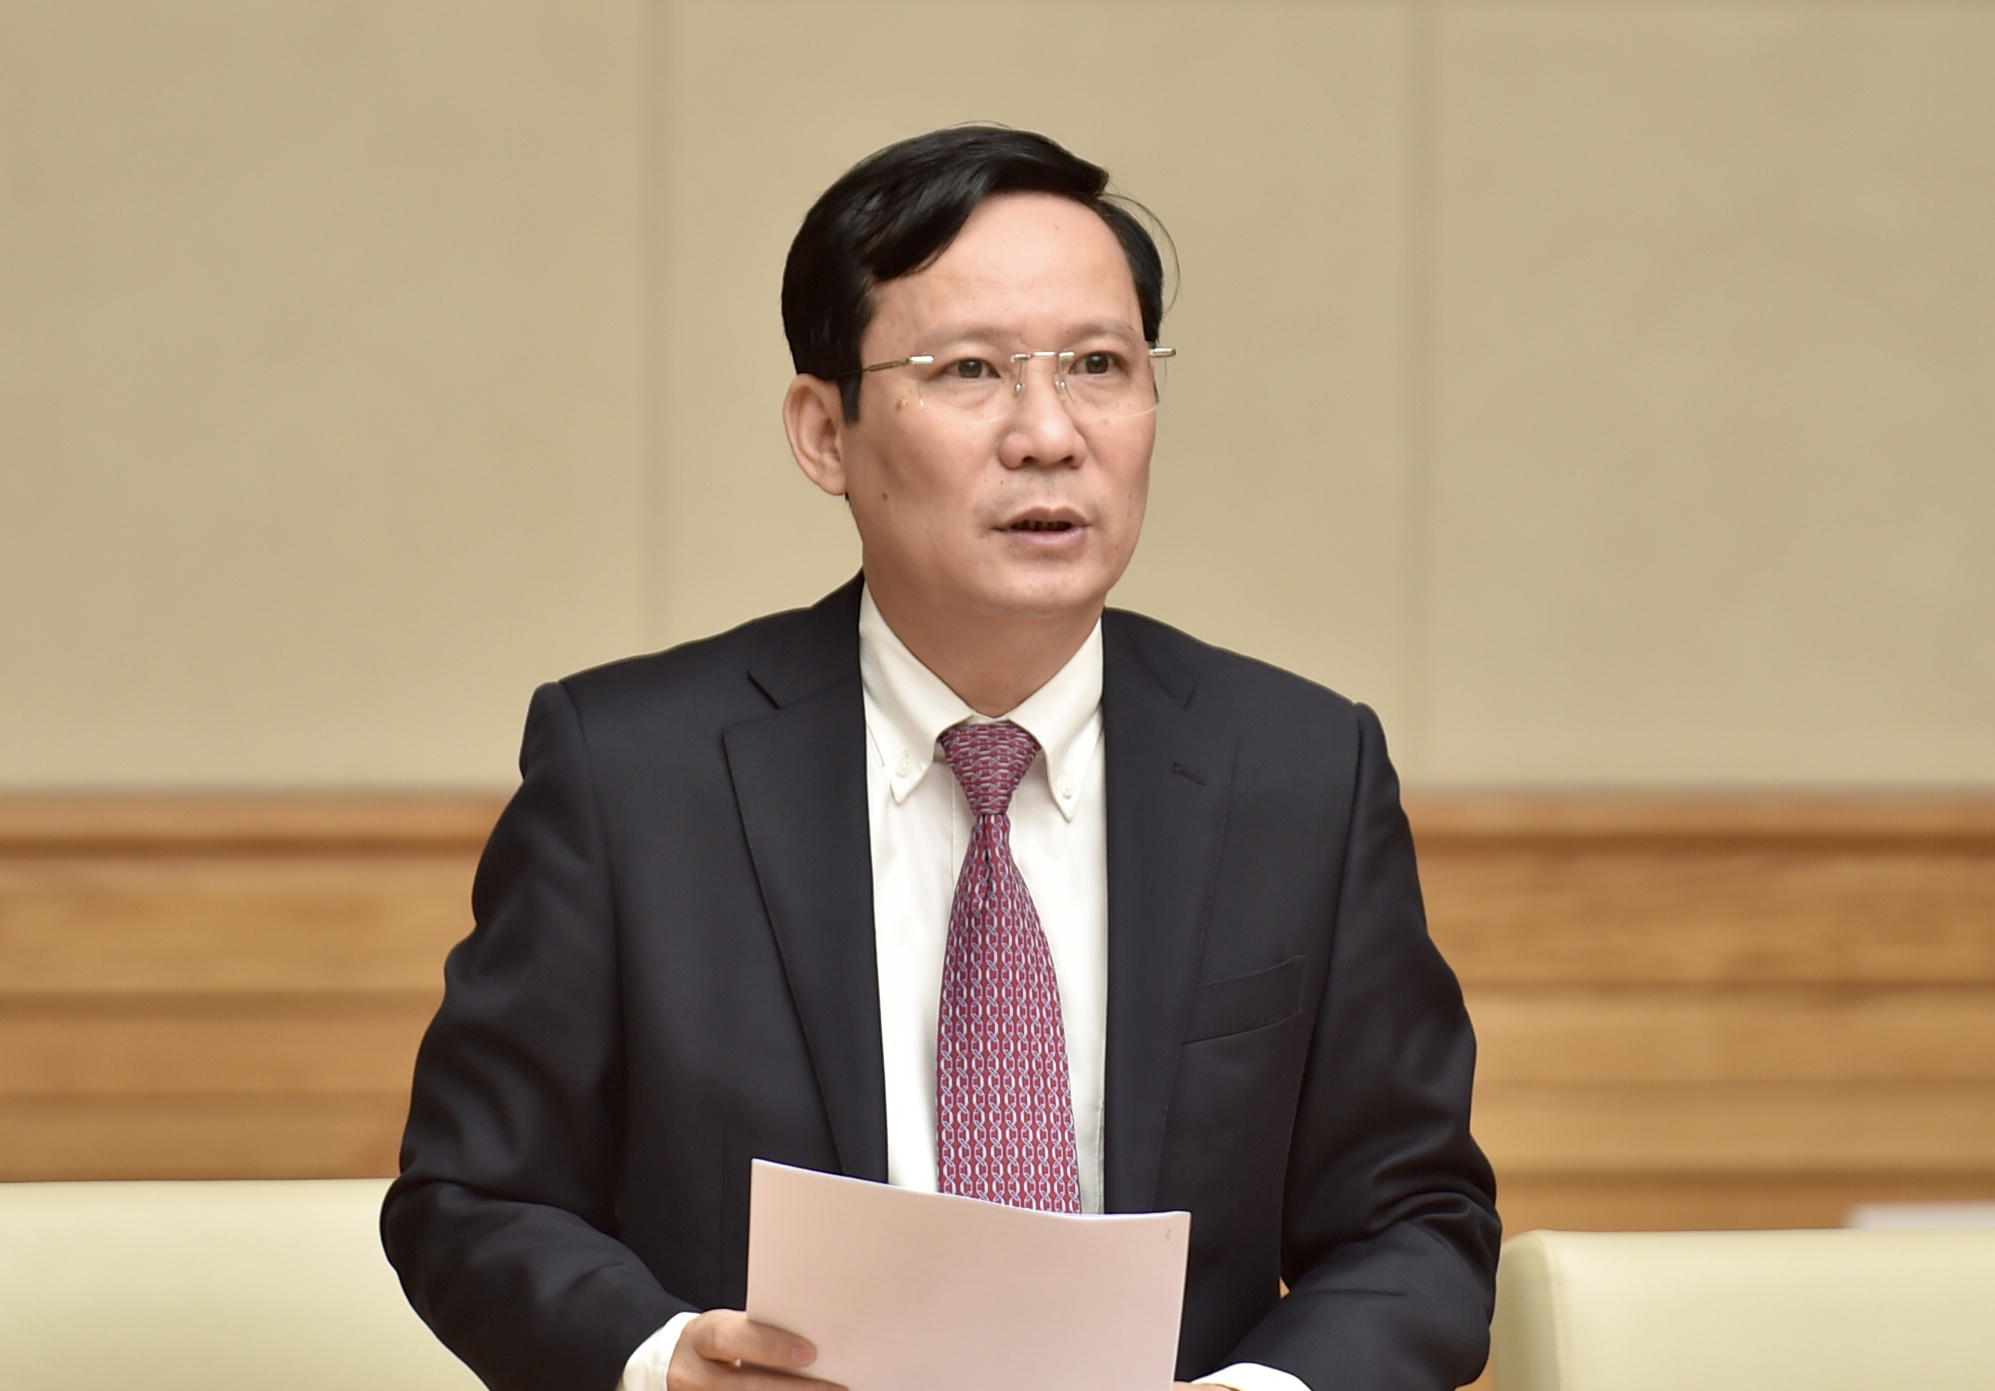 Thủ tướng Phạm Minh Chính gặp mặt doanh nhân nhân Ngày Doanh nhân Việt Nam